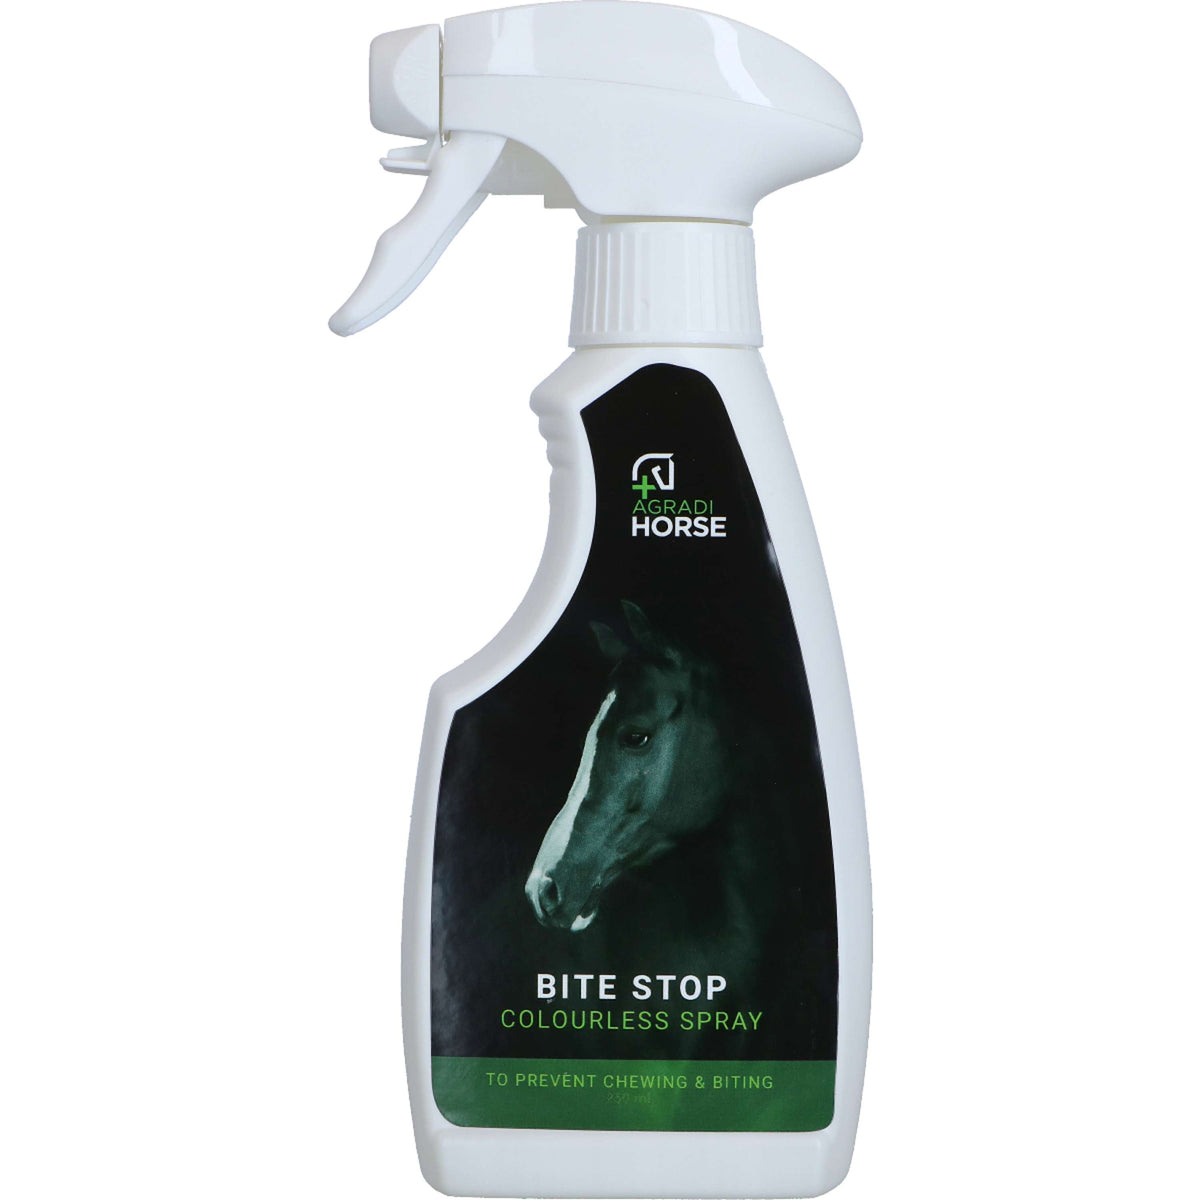 Agradi Horse Bite Stop Spray